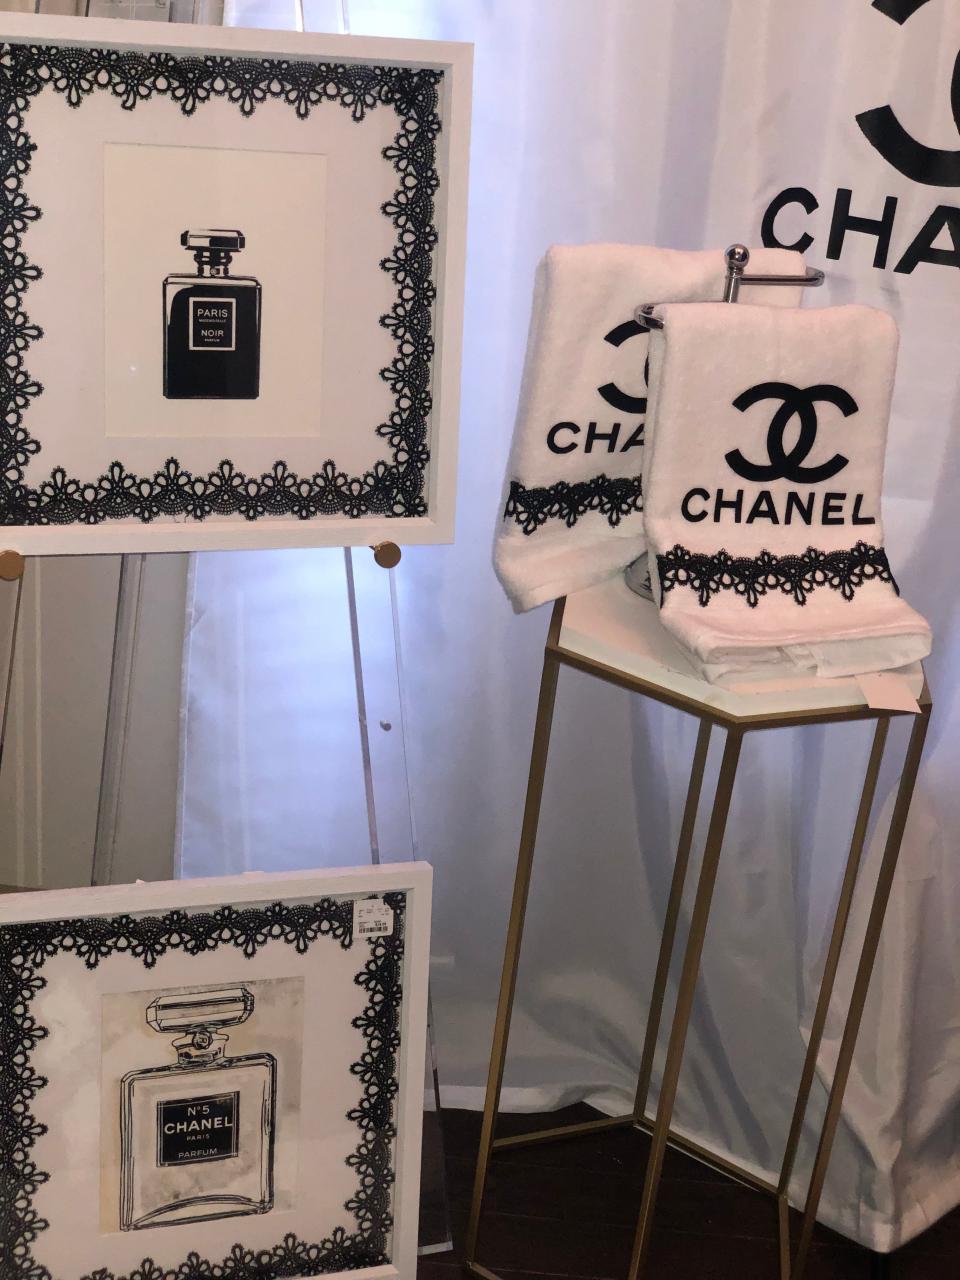 Fashion Inspired Chanel Bathroom Set Shop With B.A.M